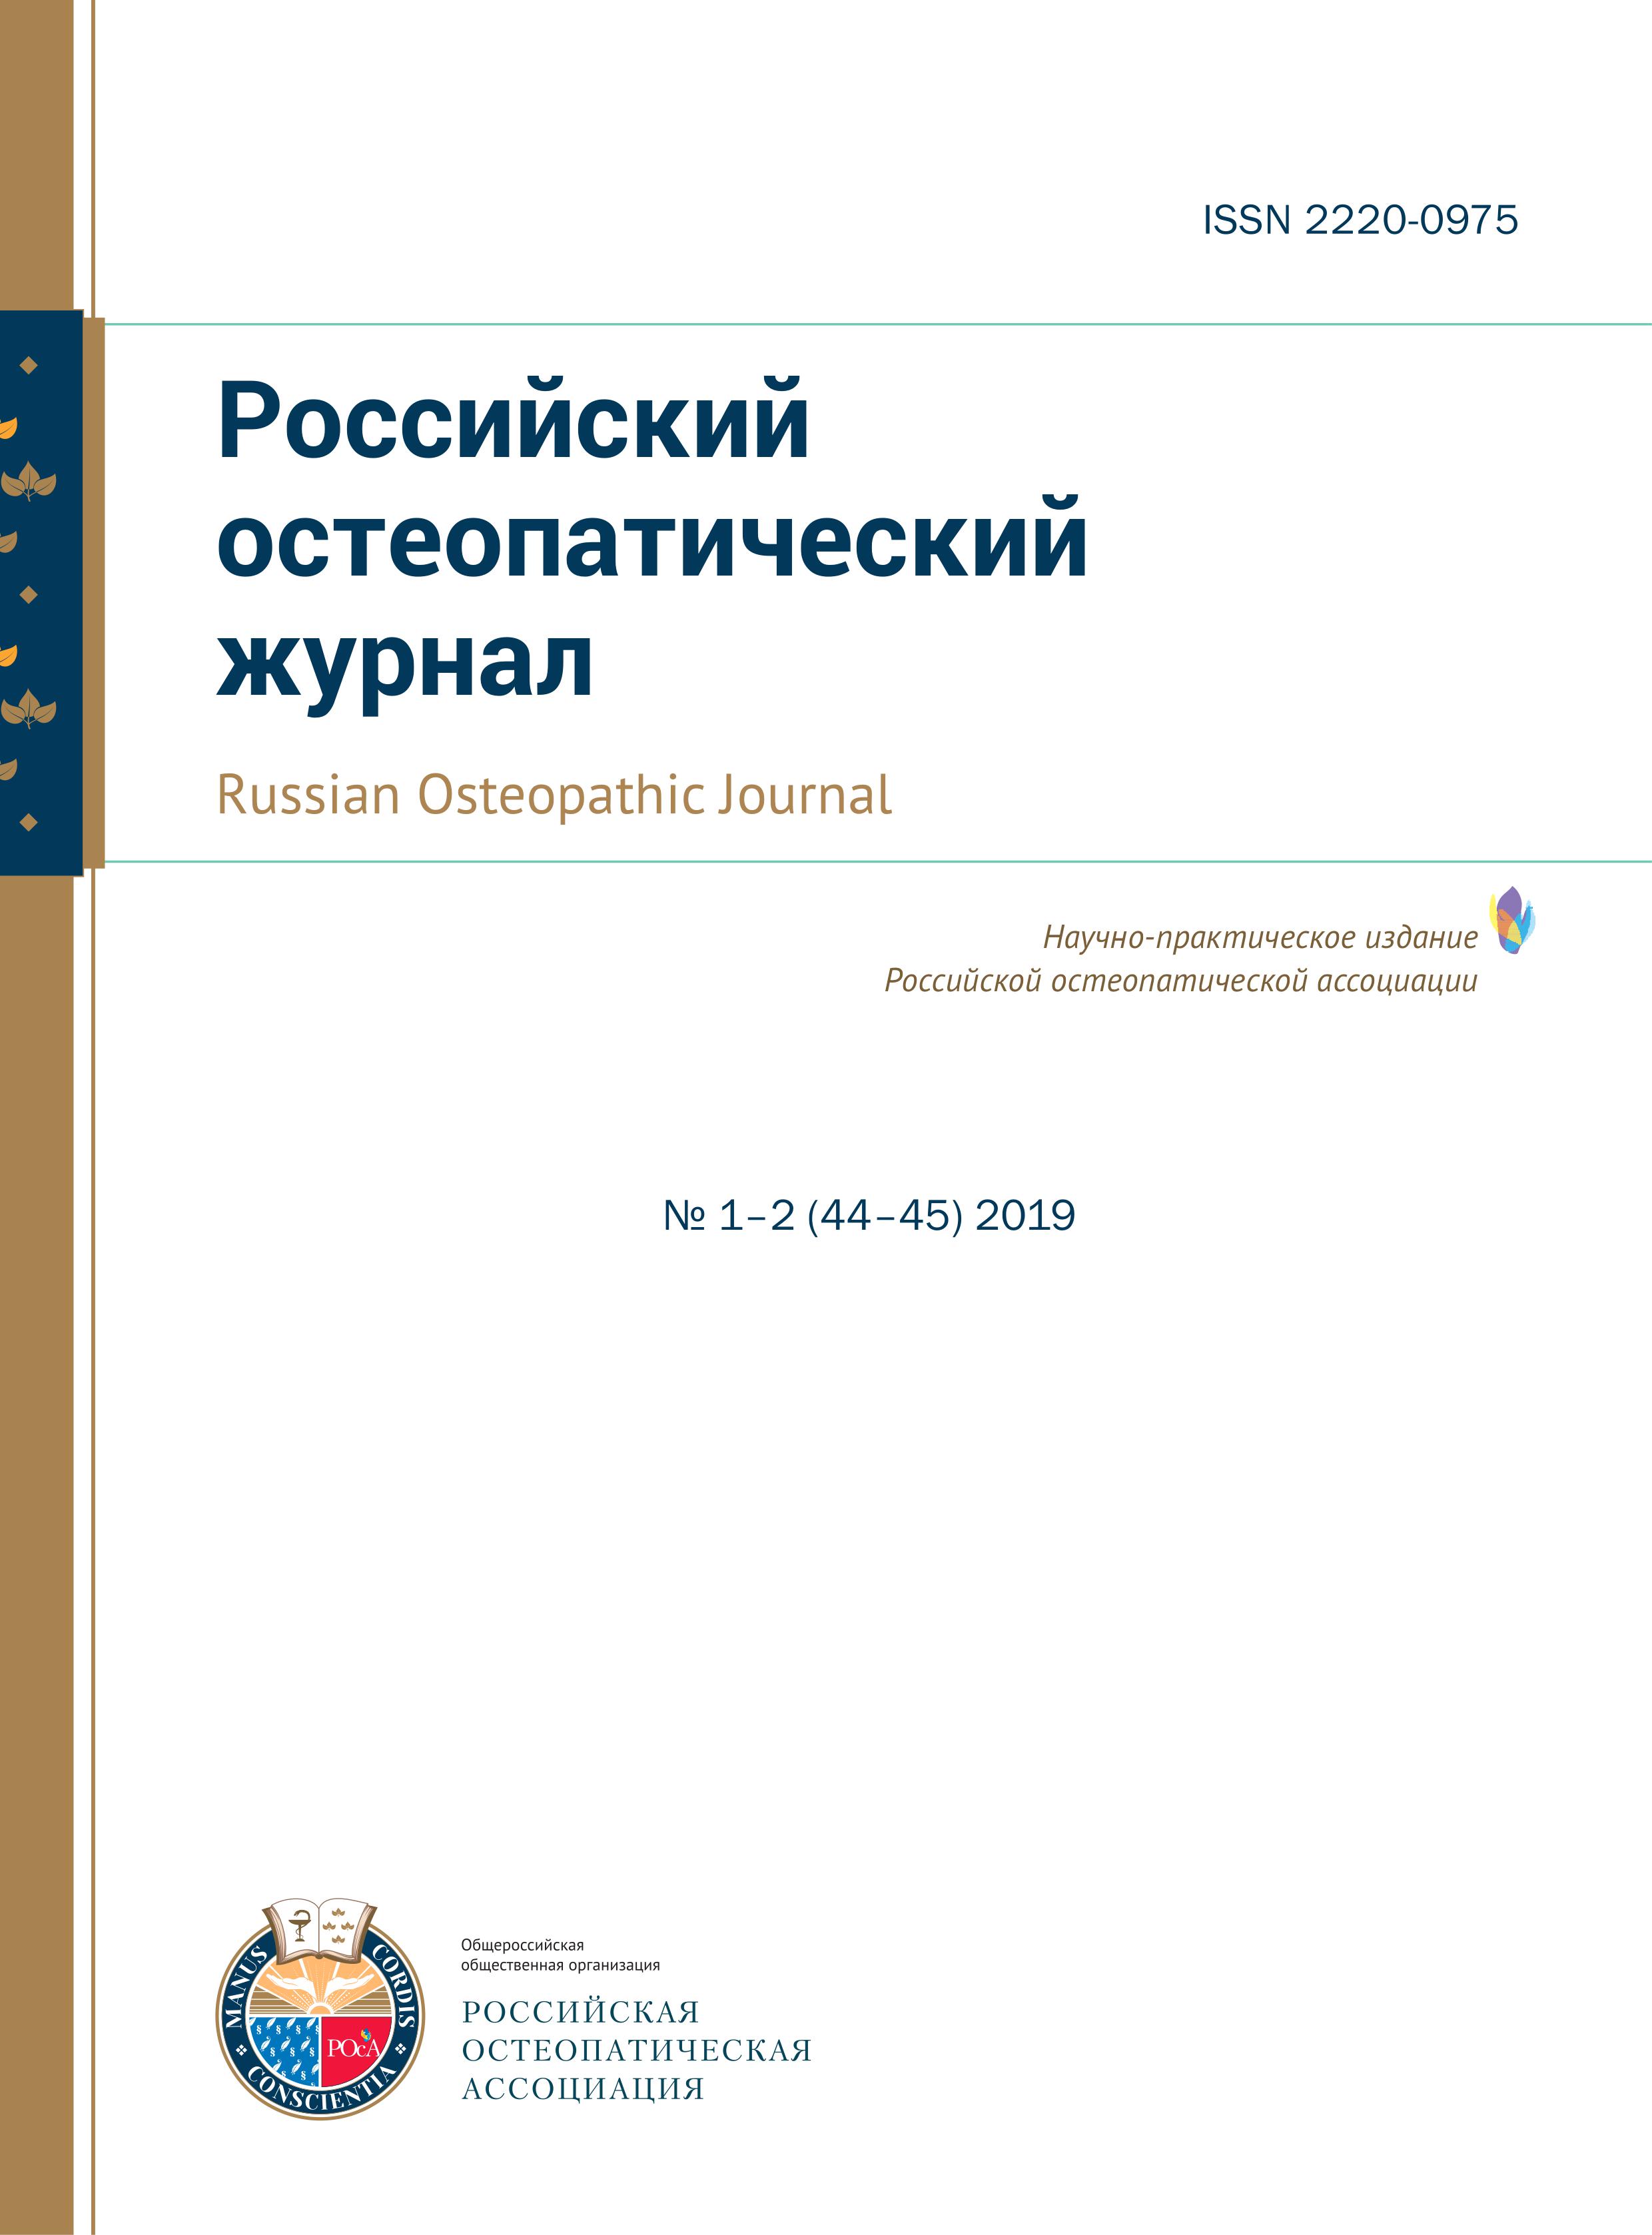 Российский остеопатический журнал, остеопатия в России